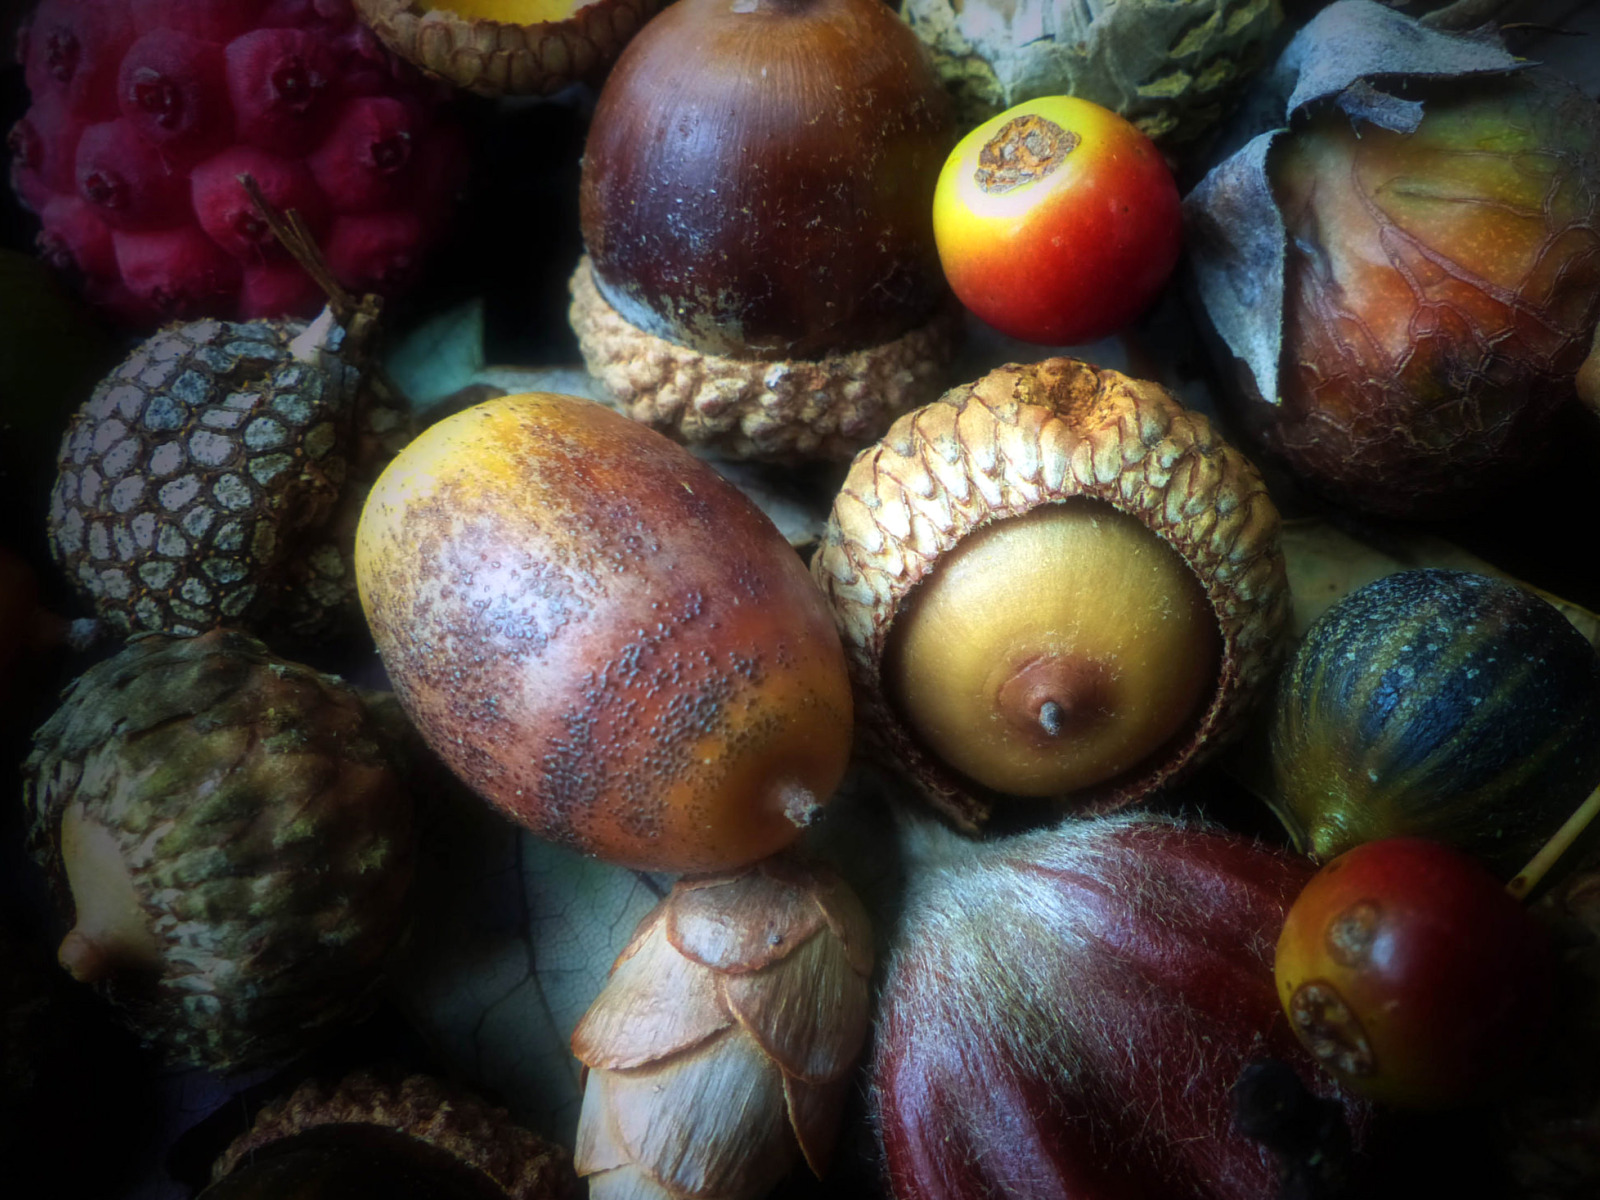 Собирают спелые орехи желуди дикие фрукты имена